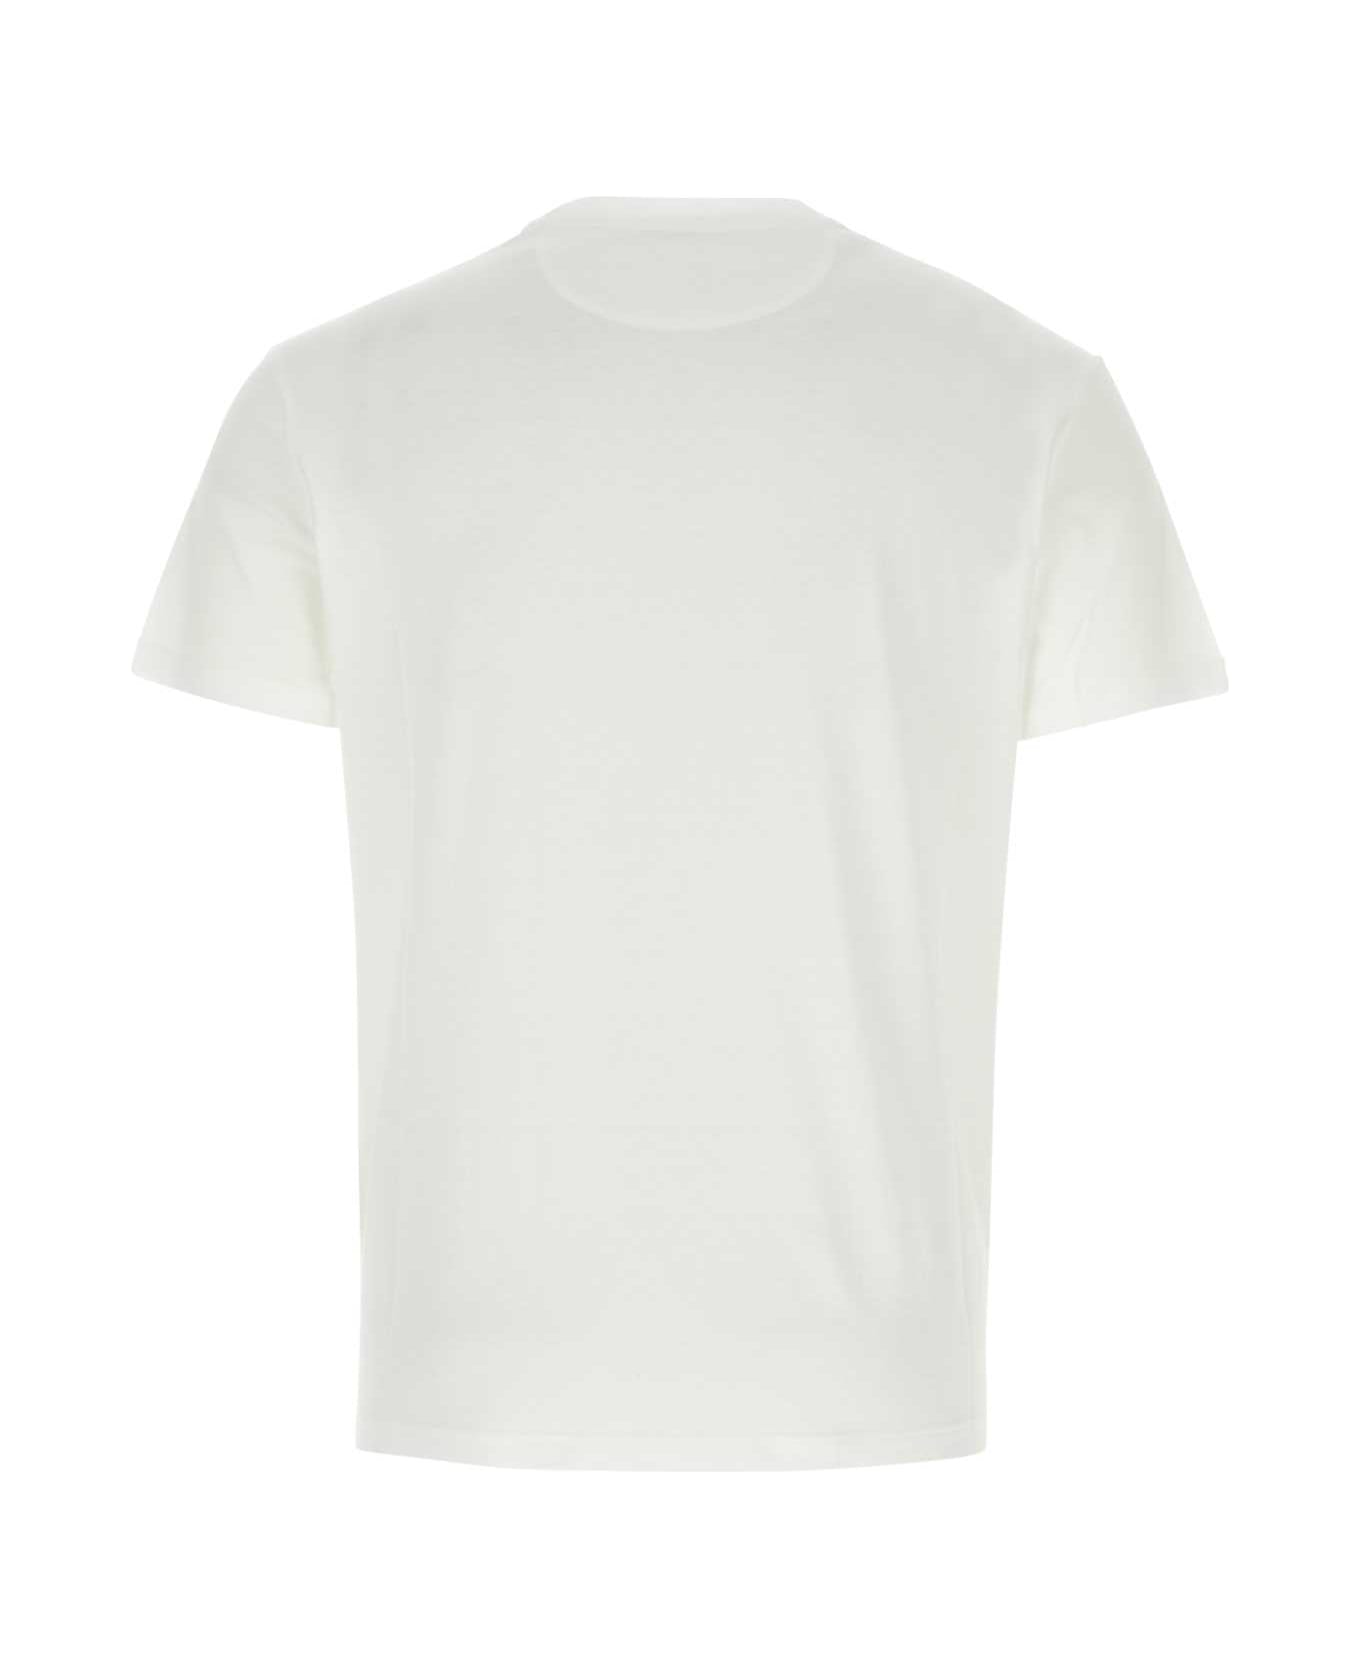 Valentino Garavani White Cotton T-shirt - BIANCO